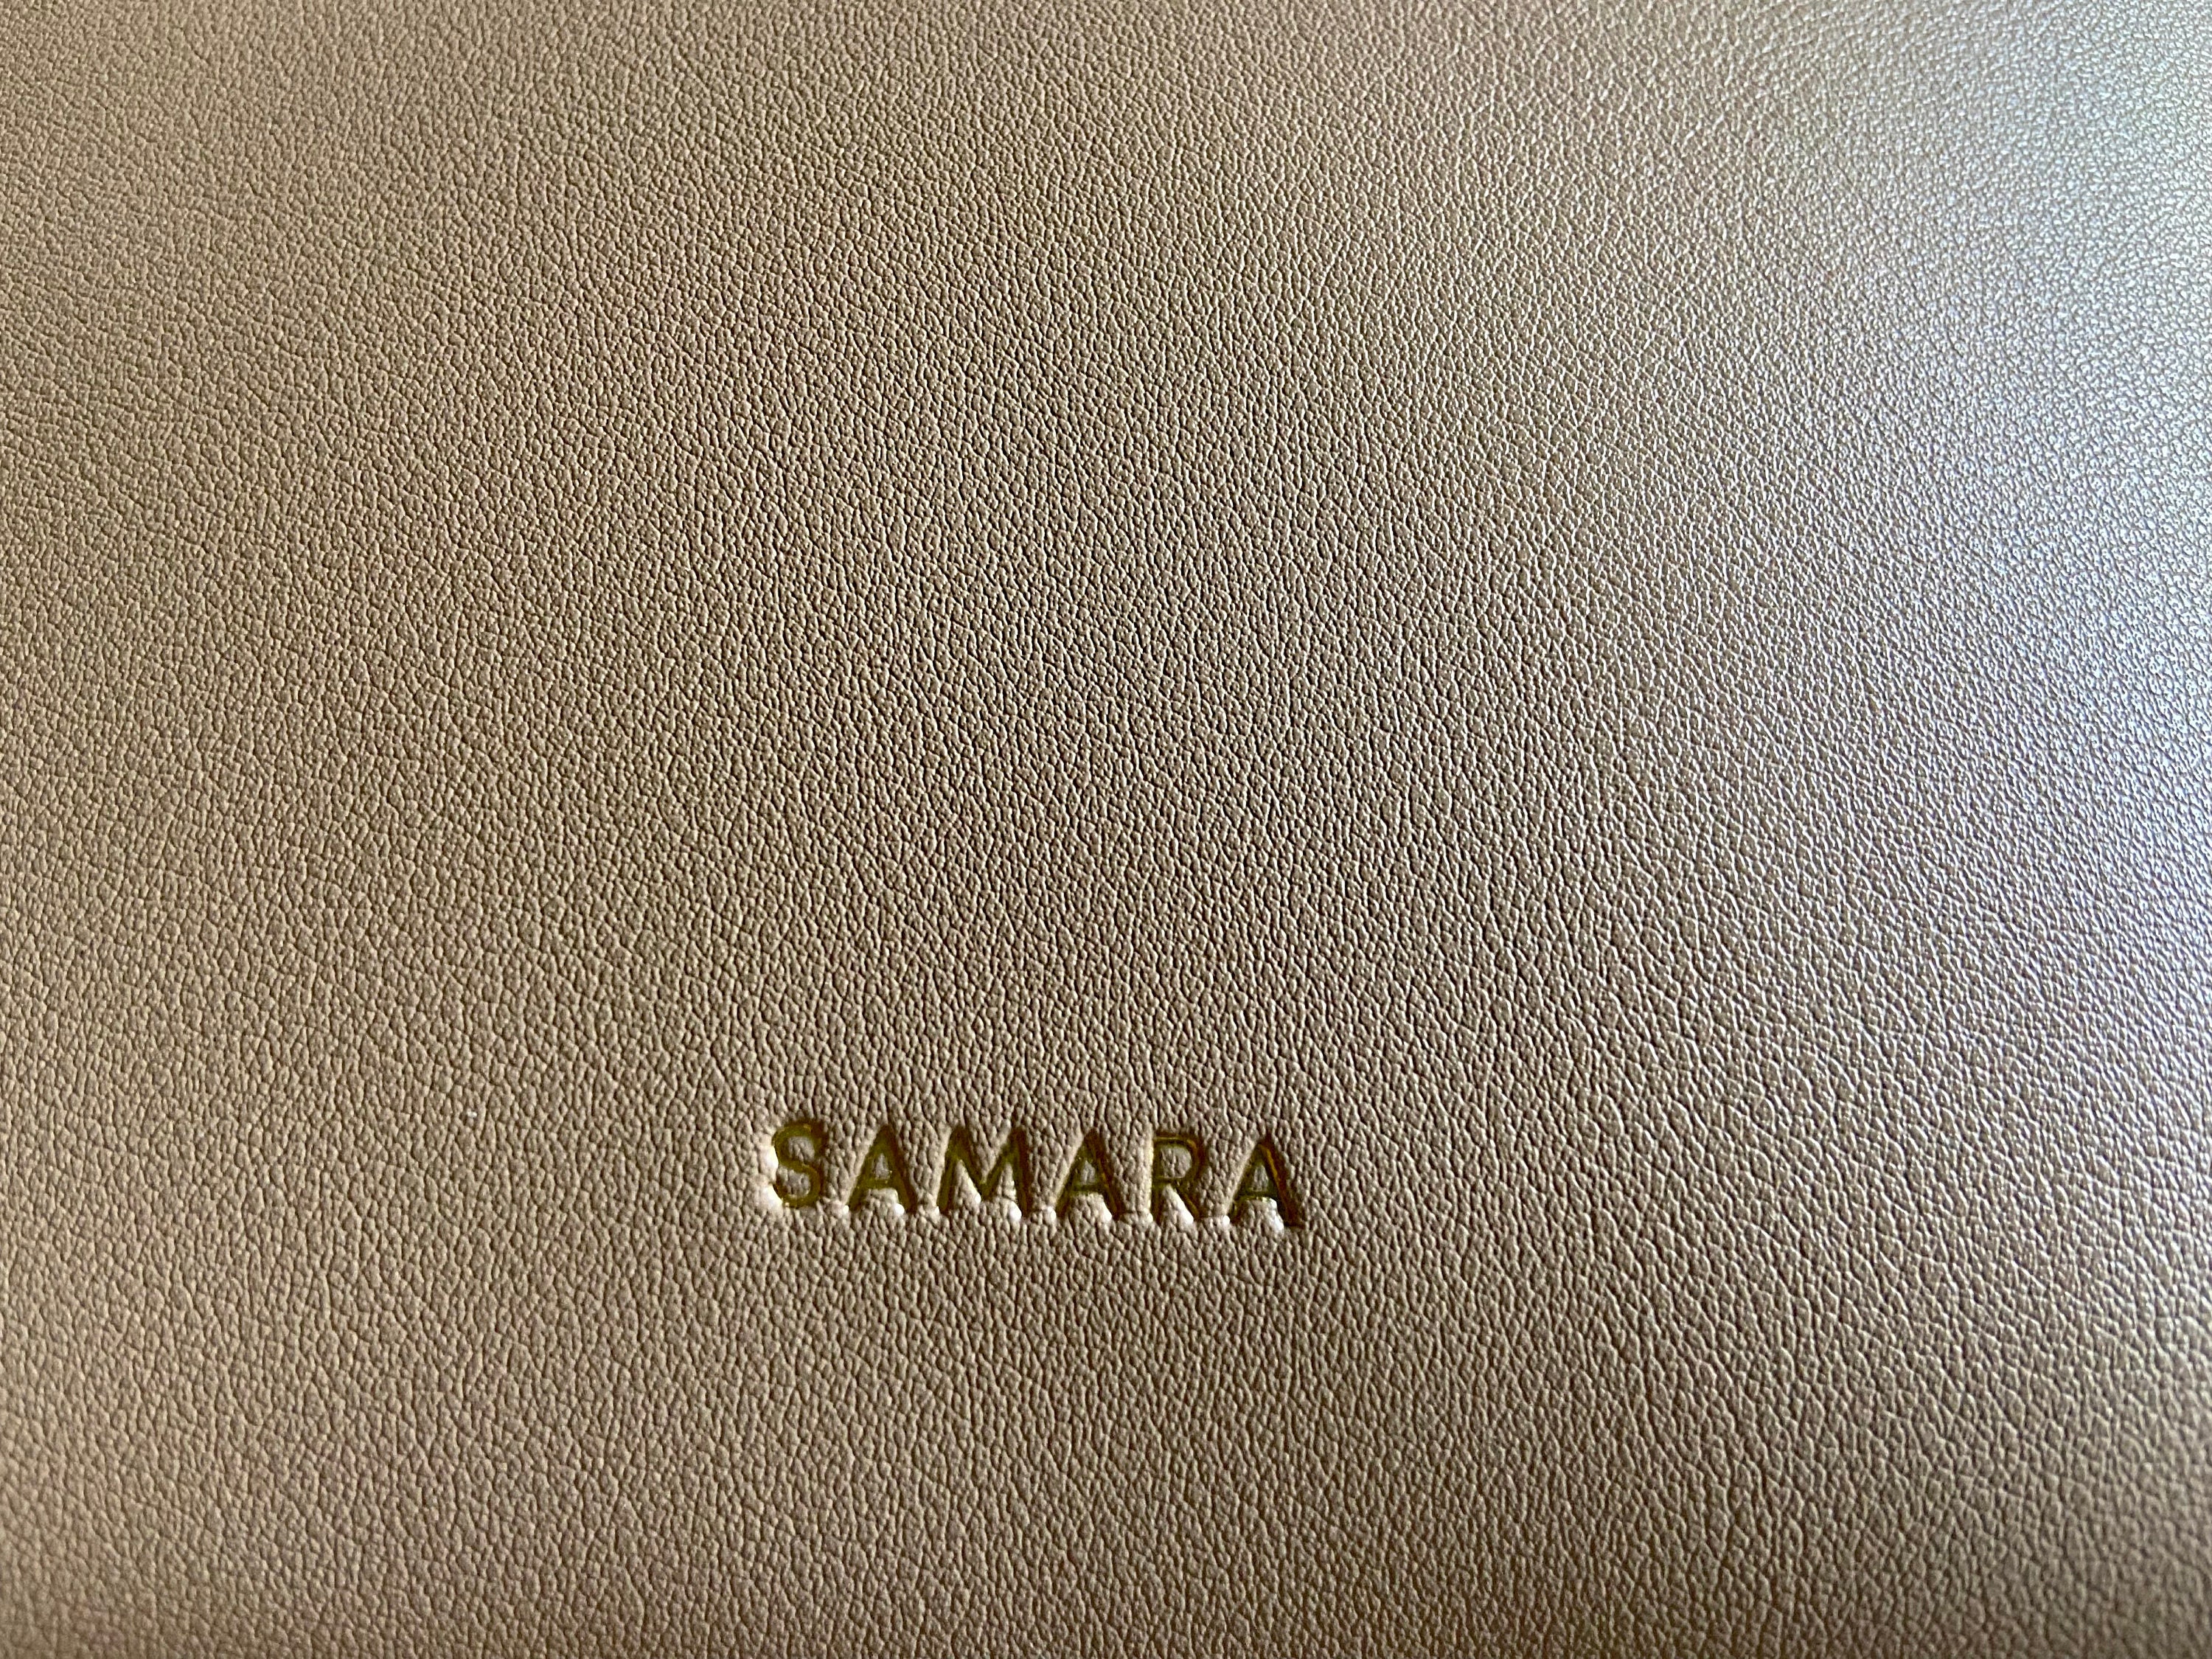 Vintage SAMARA Beige Tan Vegan Leather Shoulder Bag Purse Ship 